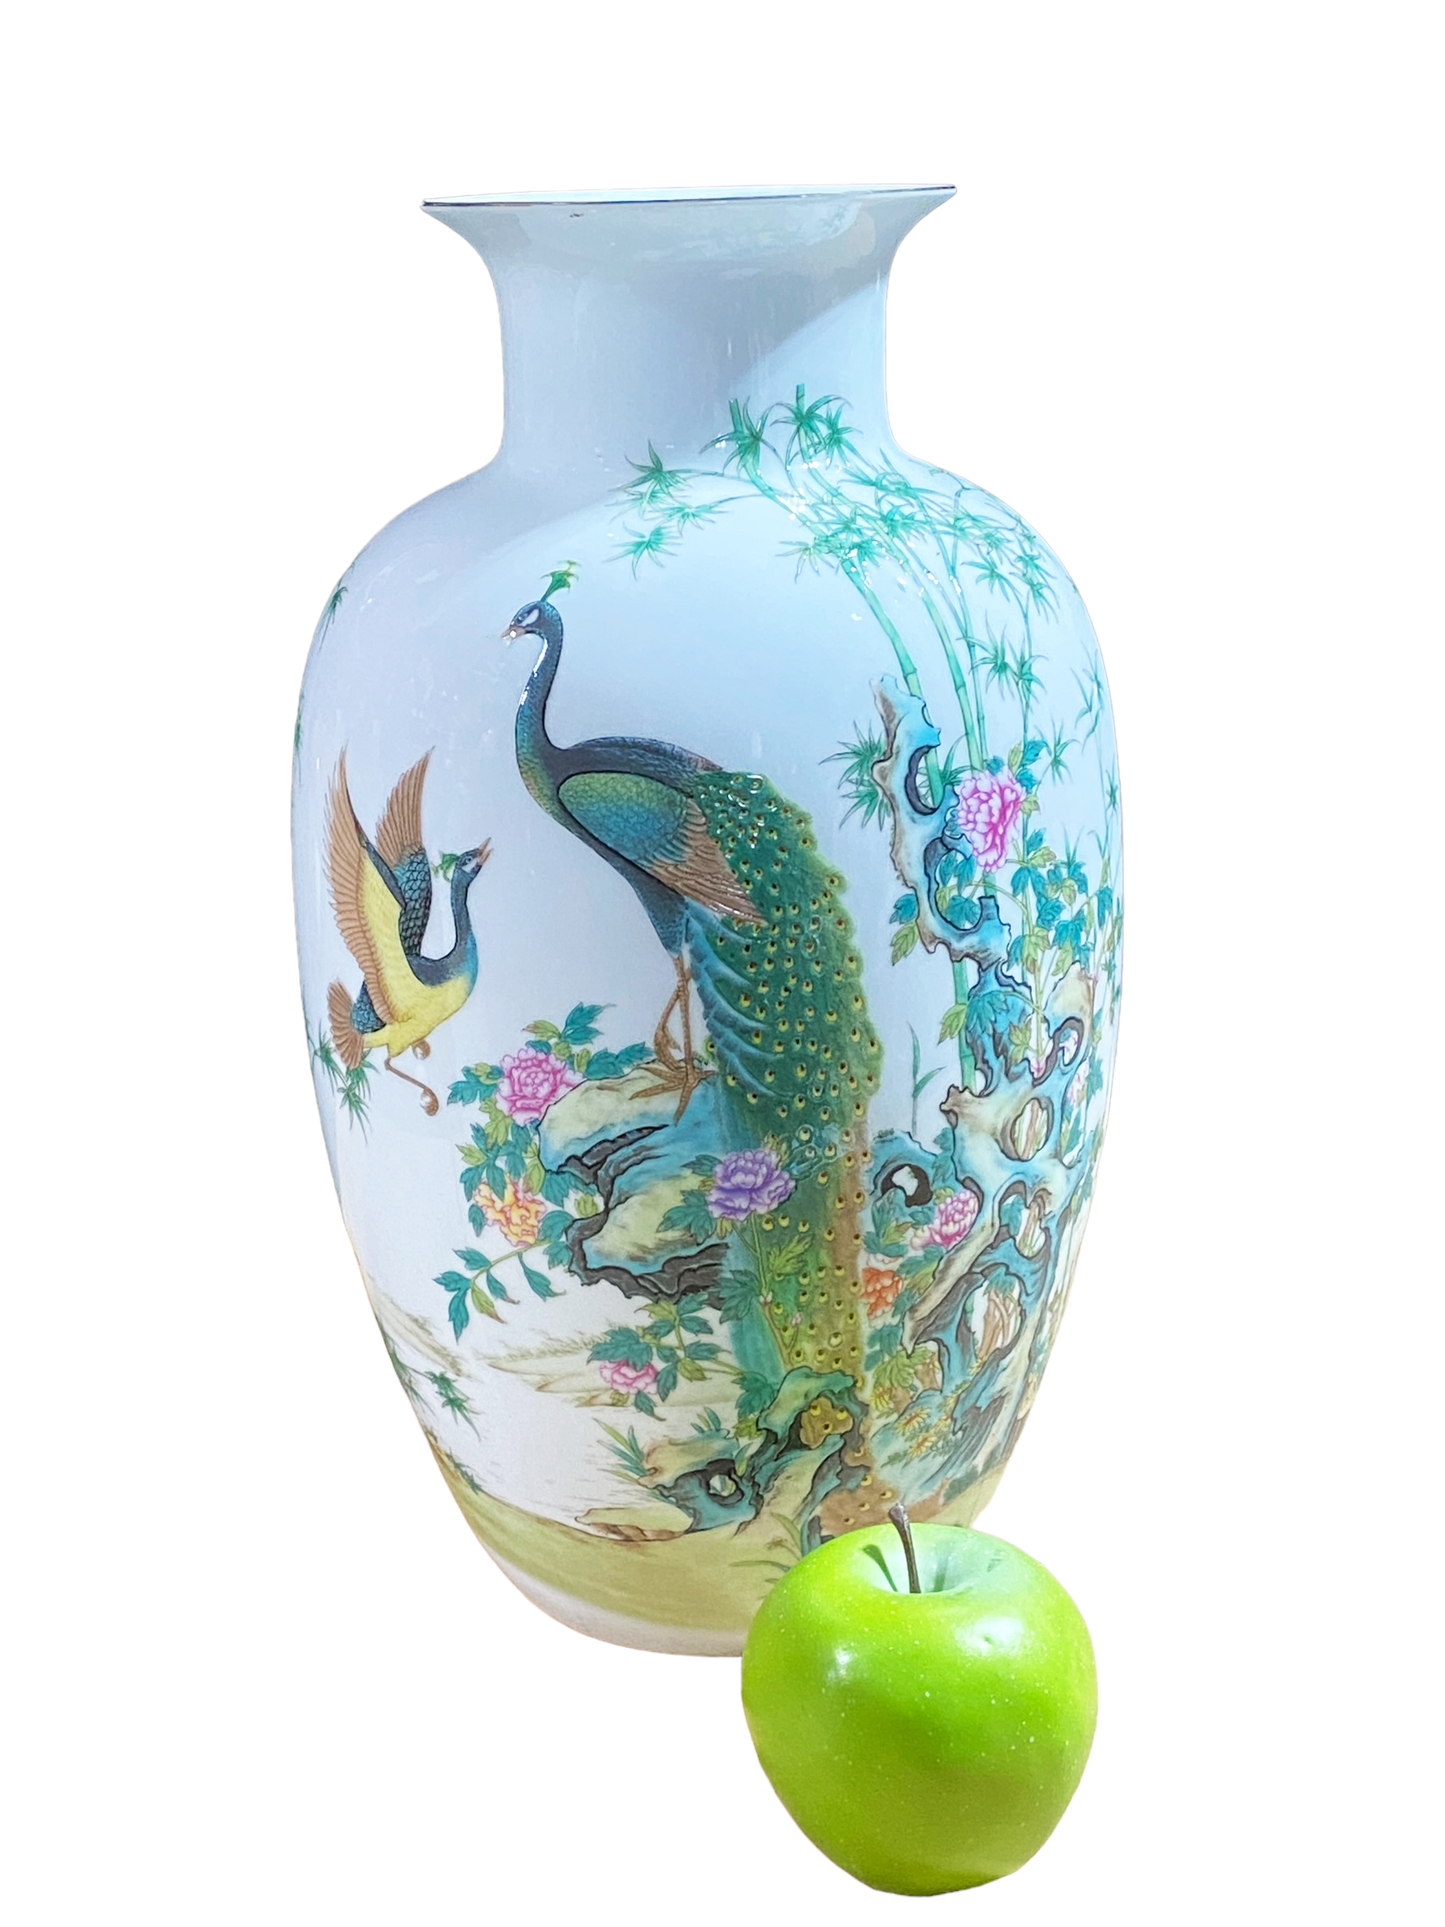 #3141 Chinoiserie Porcelain Egg Shell Vase 14" H